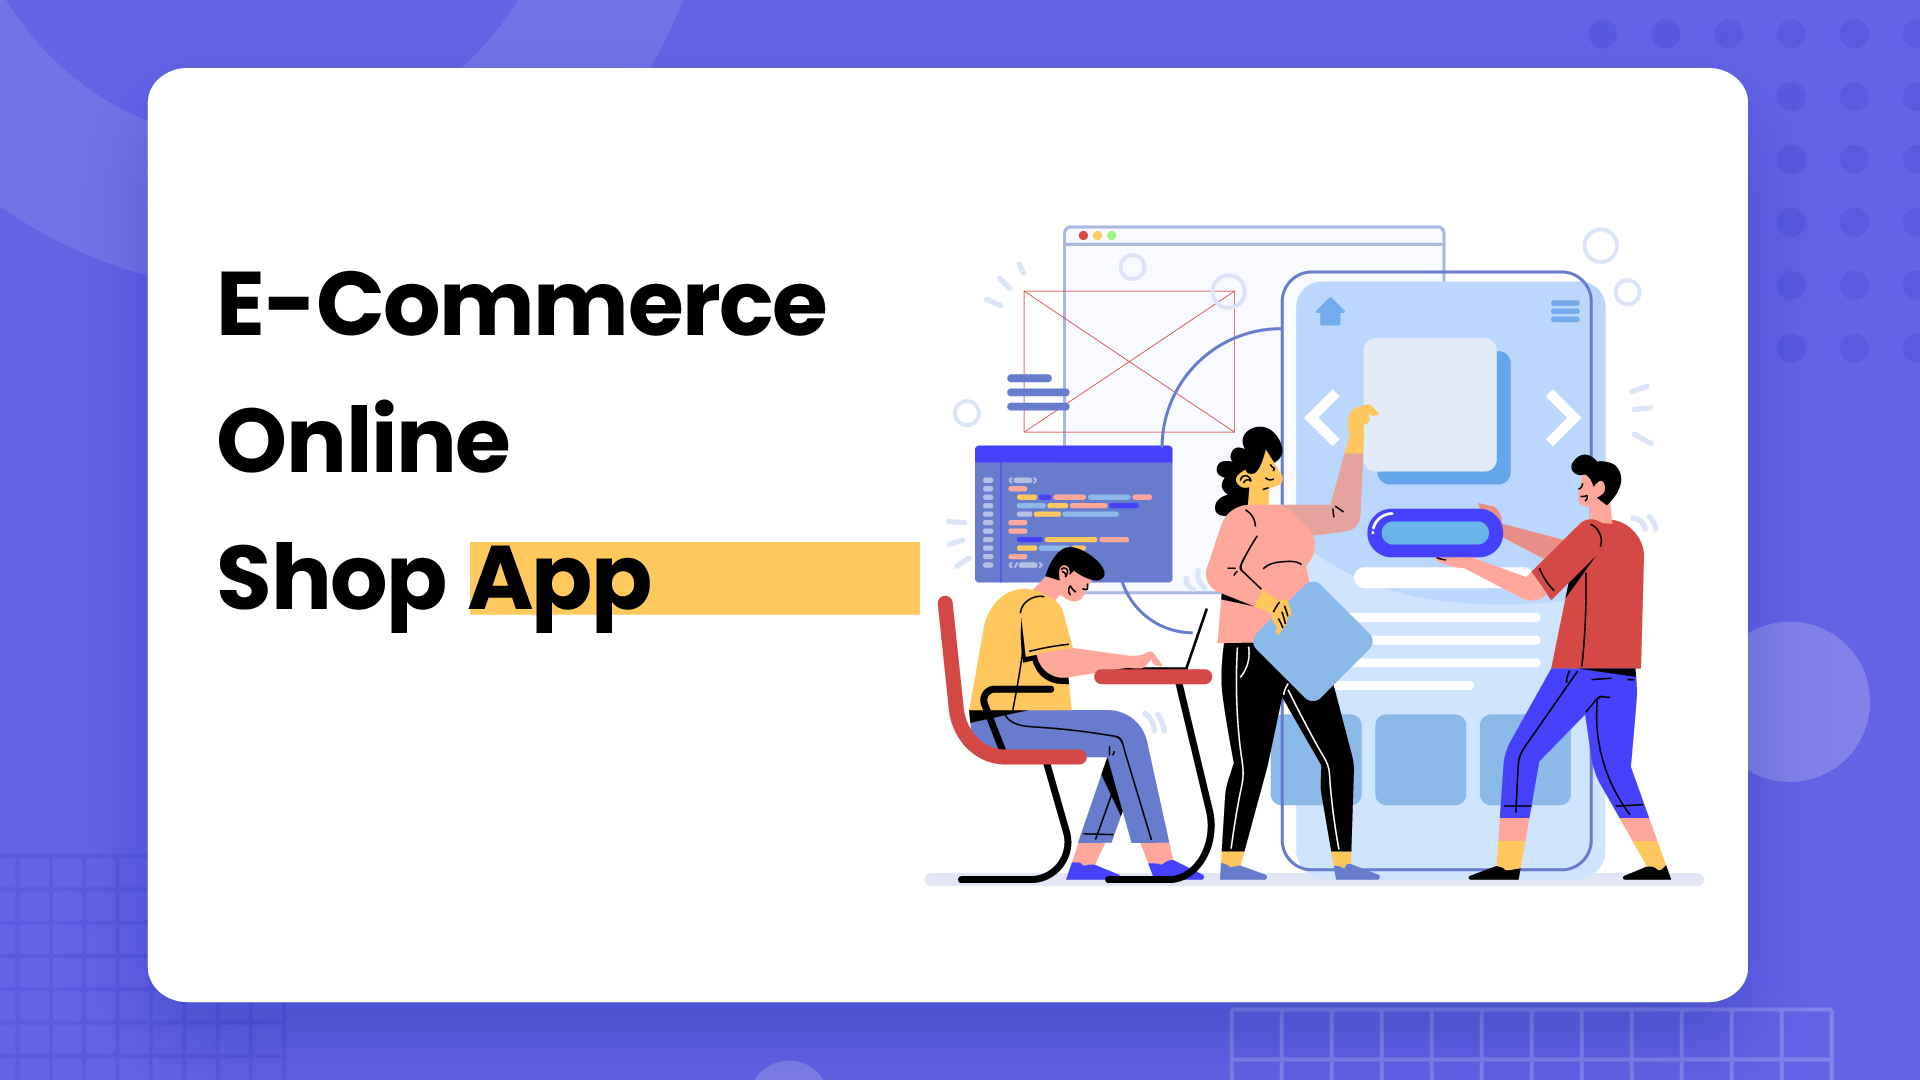 E-Commerce Online Shop App